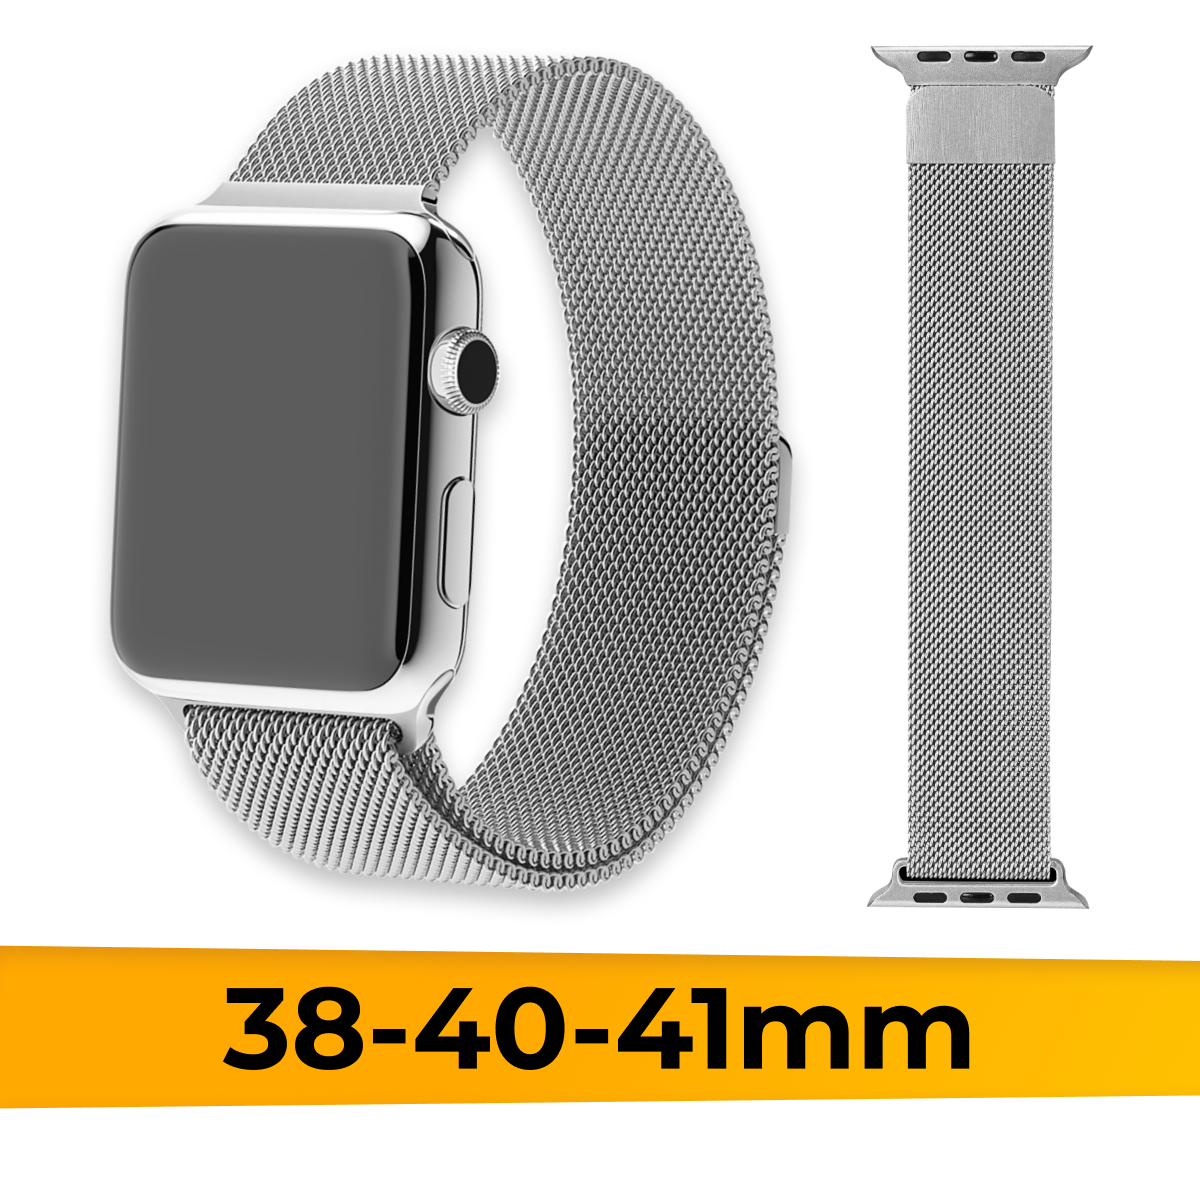 Металлический ремешок для Apple Watch 1-9, SE, 38-40-41 mm миланская петля / Браслет для часов Эпл Вотч Series 1-9, СE на магнитной застежке / Серебро